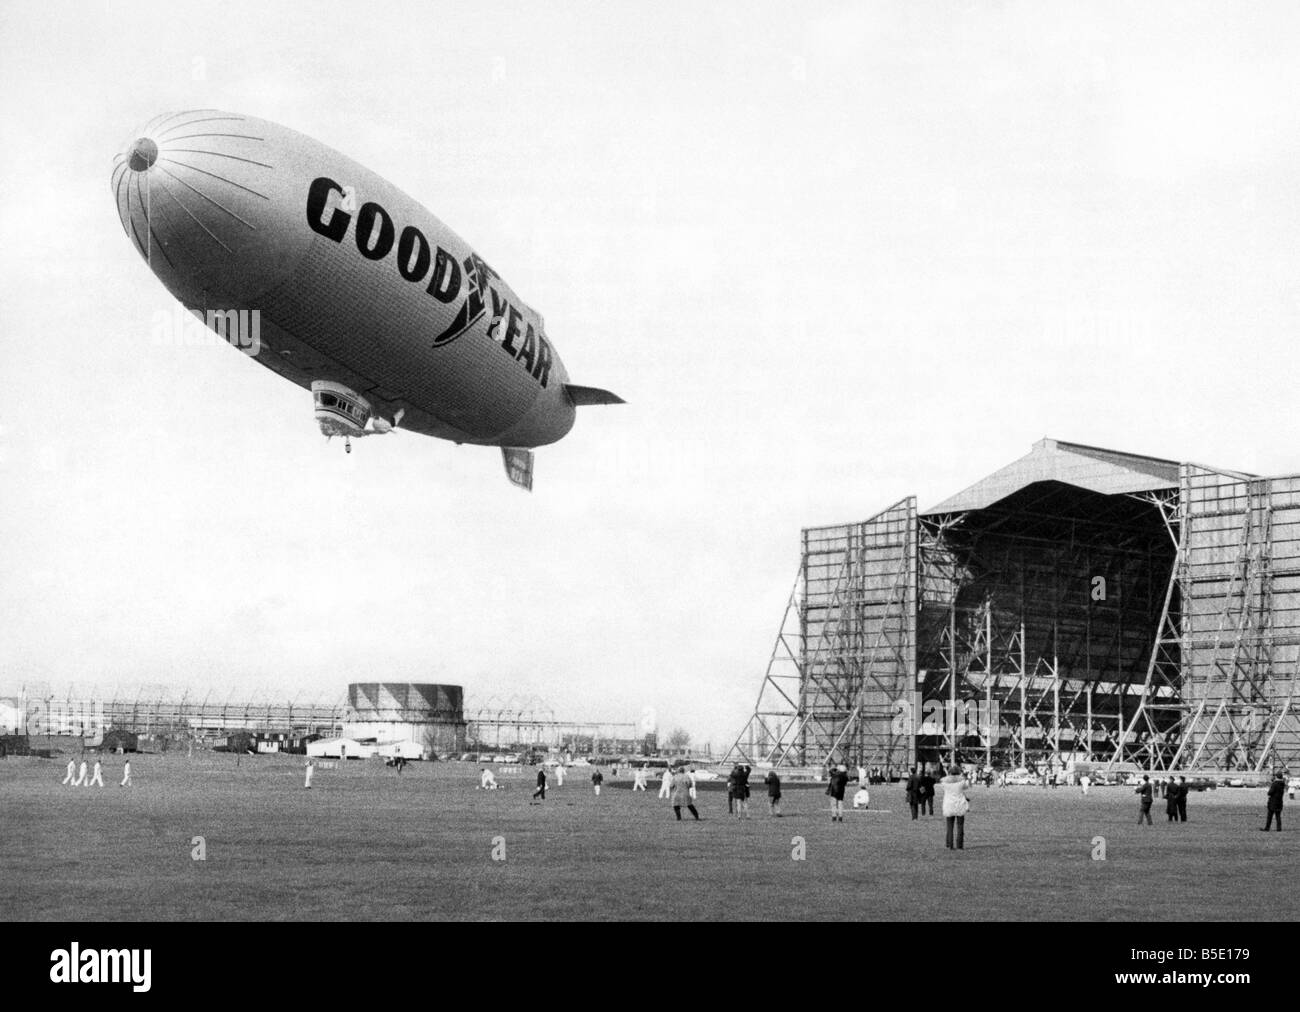 Il Goodyear Europa dirigibile sorge sopra il suo hangar a Cardington - lo stesso hangar che una volta alloggiata la sfortunata R101. Mar. 197 Foto Stock